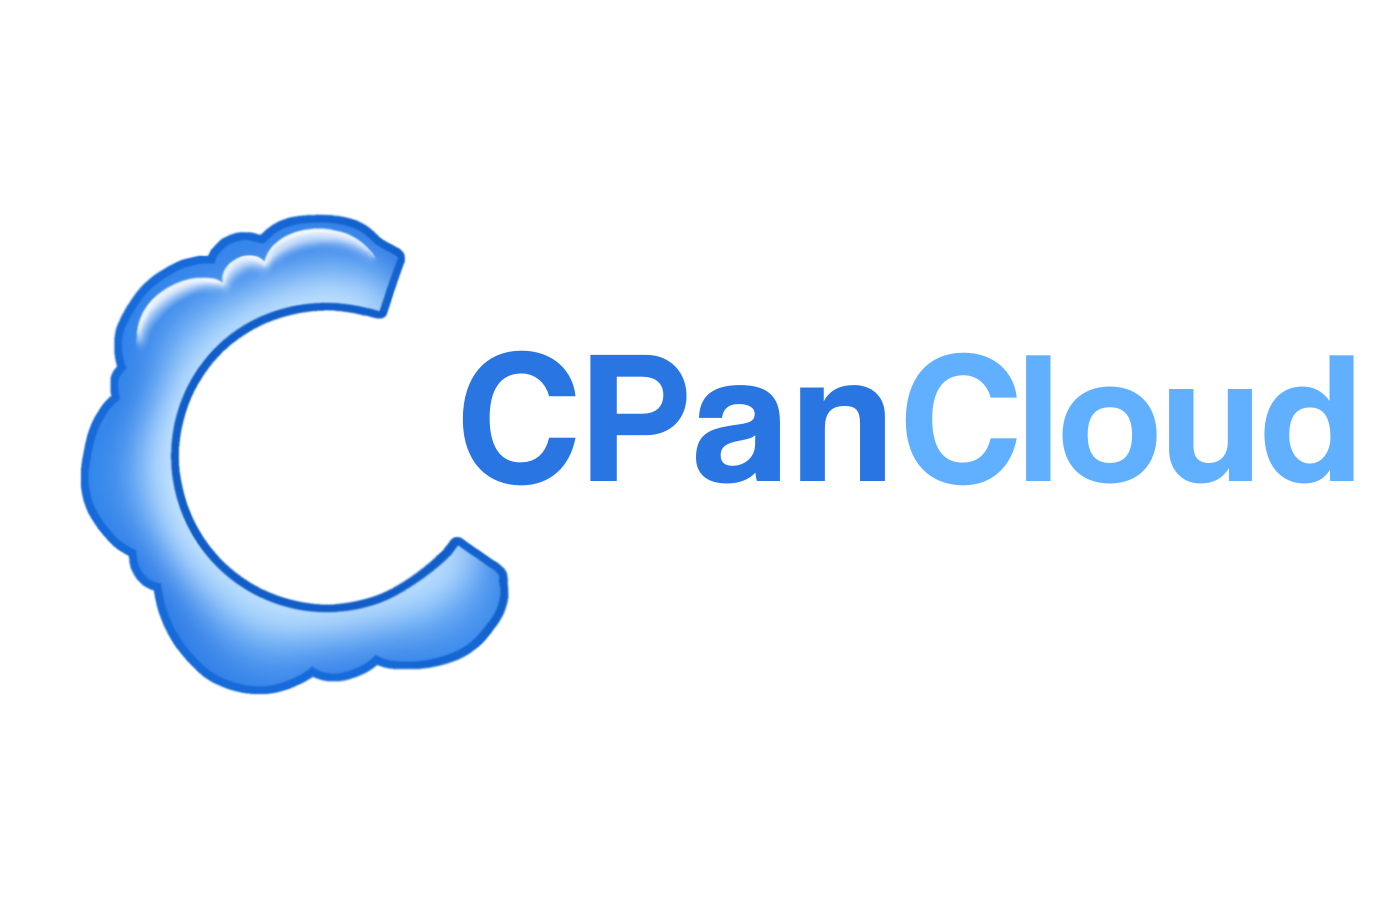 CPanCloud